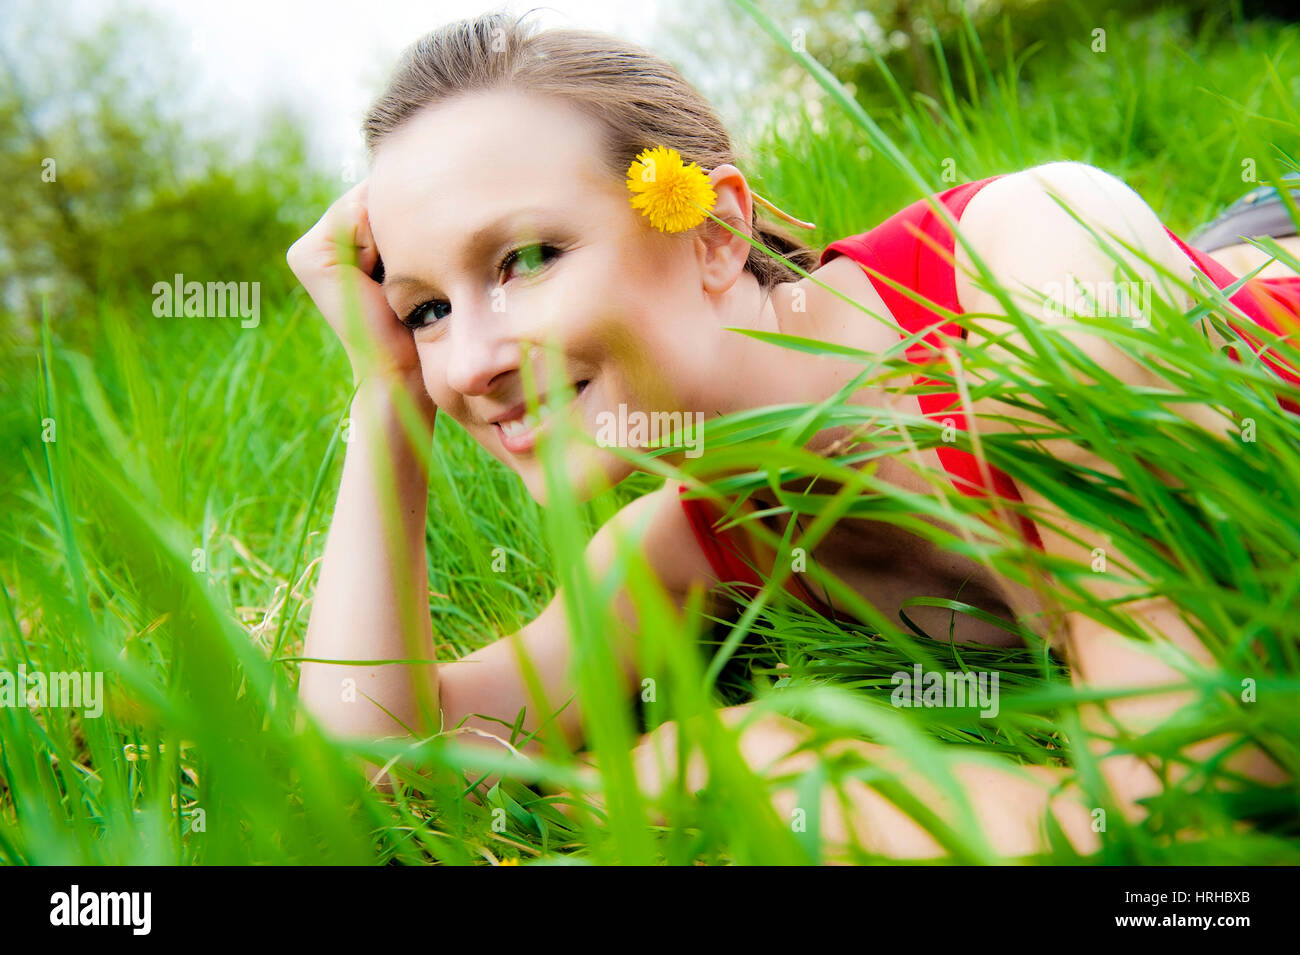 Model released, Junge Frau in Fruehlingswiese - woman in spring meadow Stock Photo